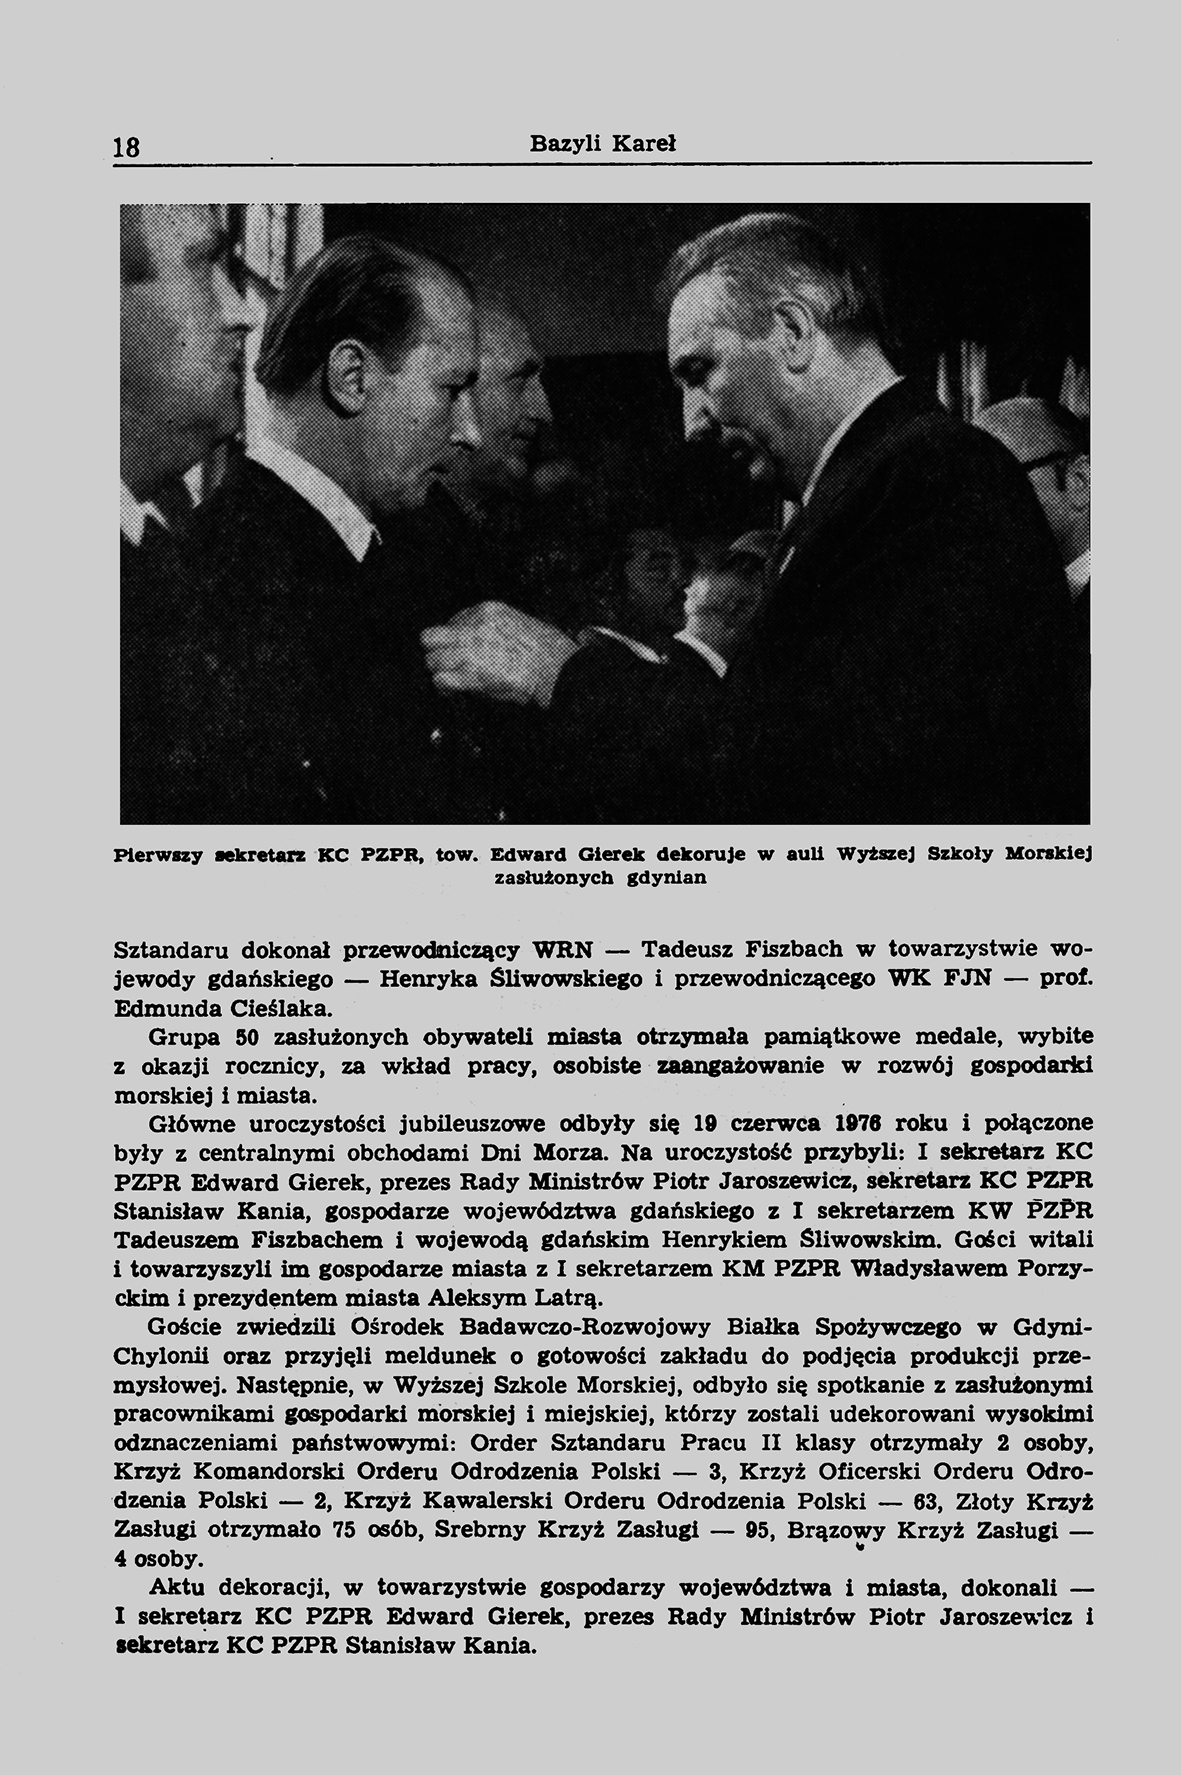 Przemówienie wygłoszone w Gdyni 19 czerwca 1976 r.